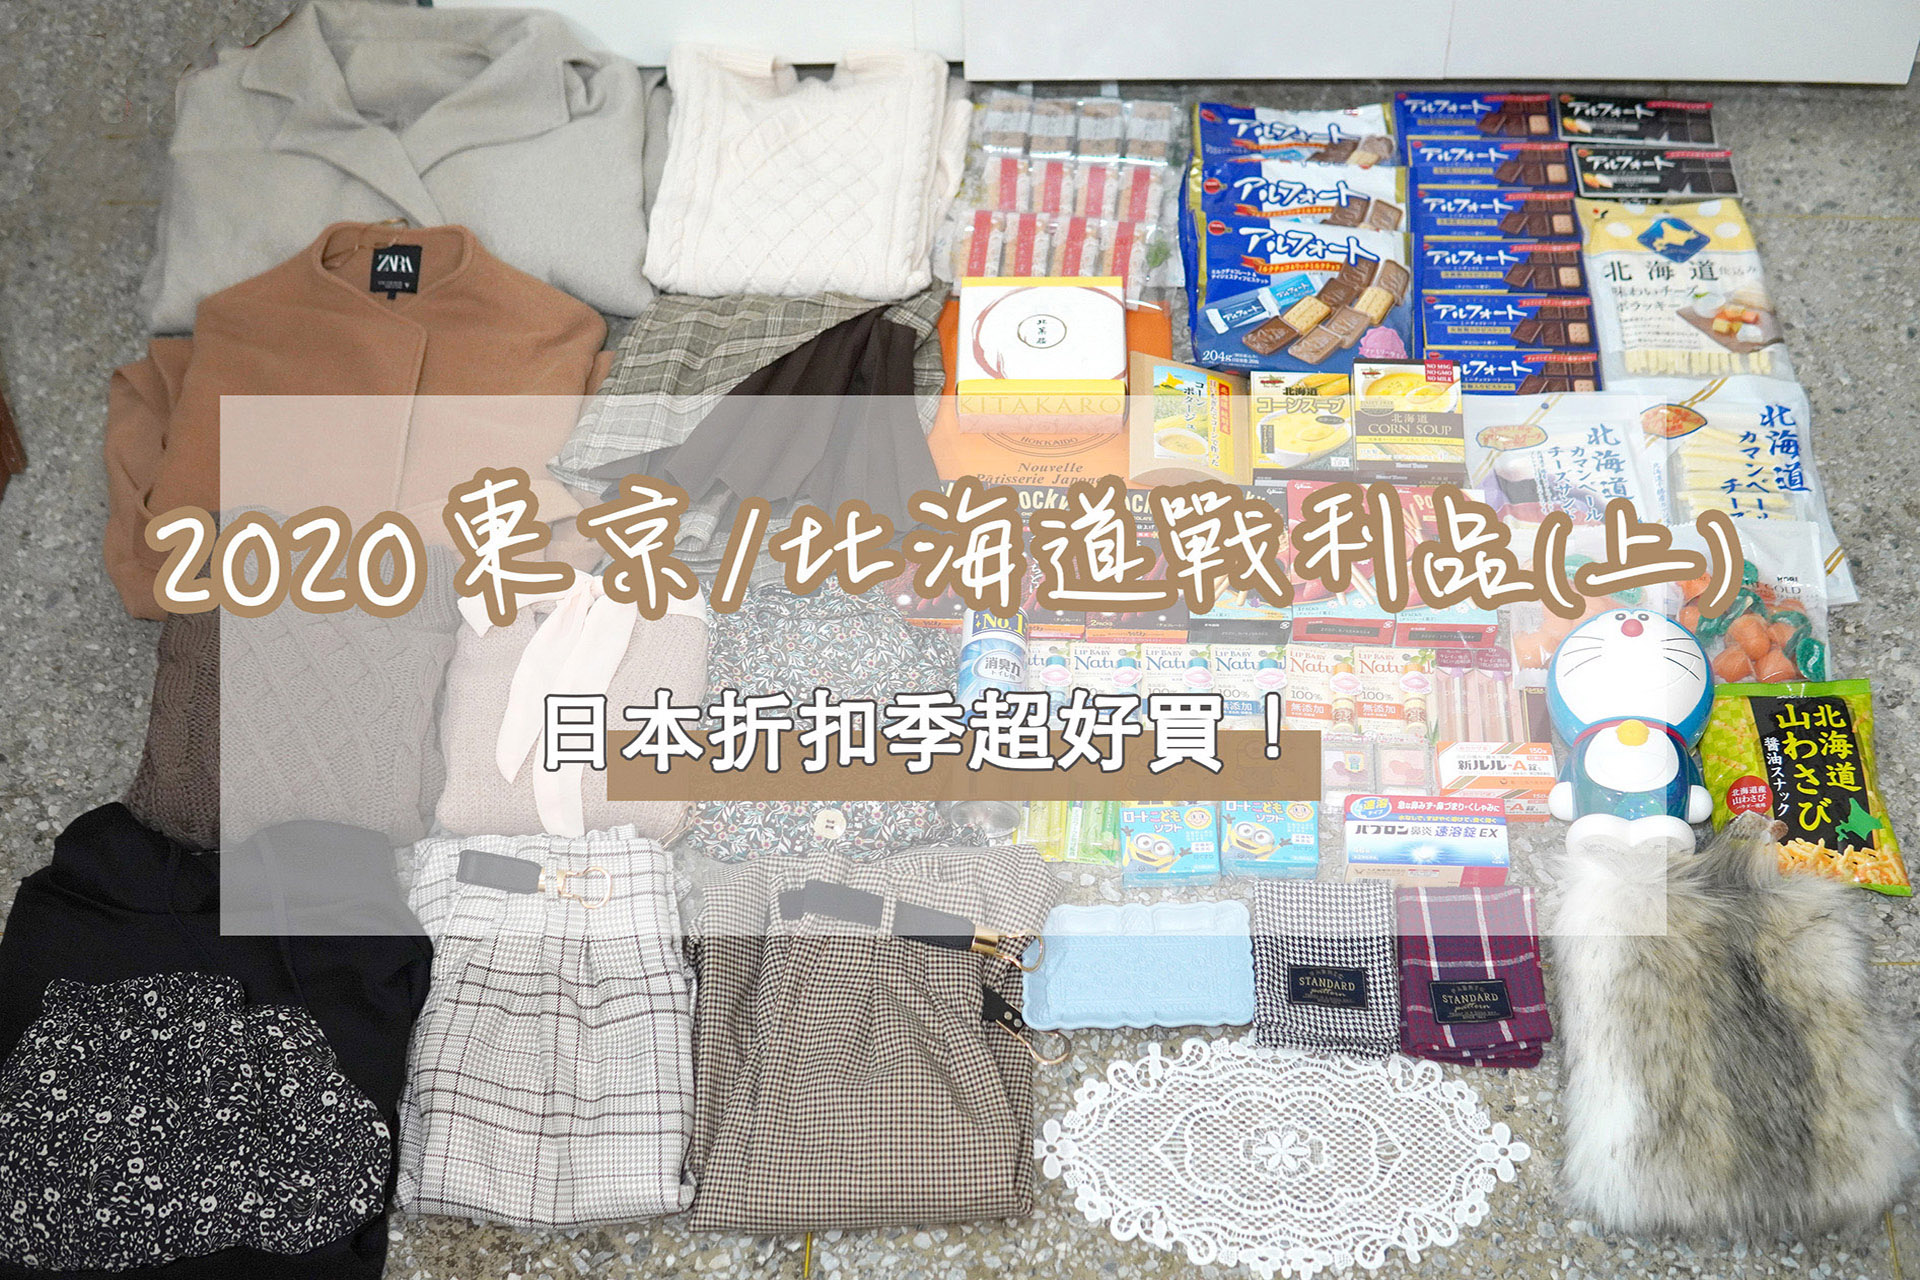 延伸閱讀：☆【2020。東京 / 北海道】日本折扣季爆好買！(上)：精品、雜貨、藥妝、零食、北海道伴手禮戰利品